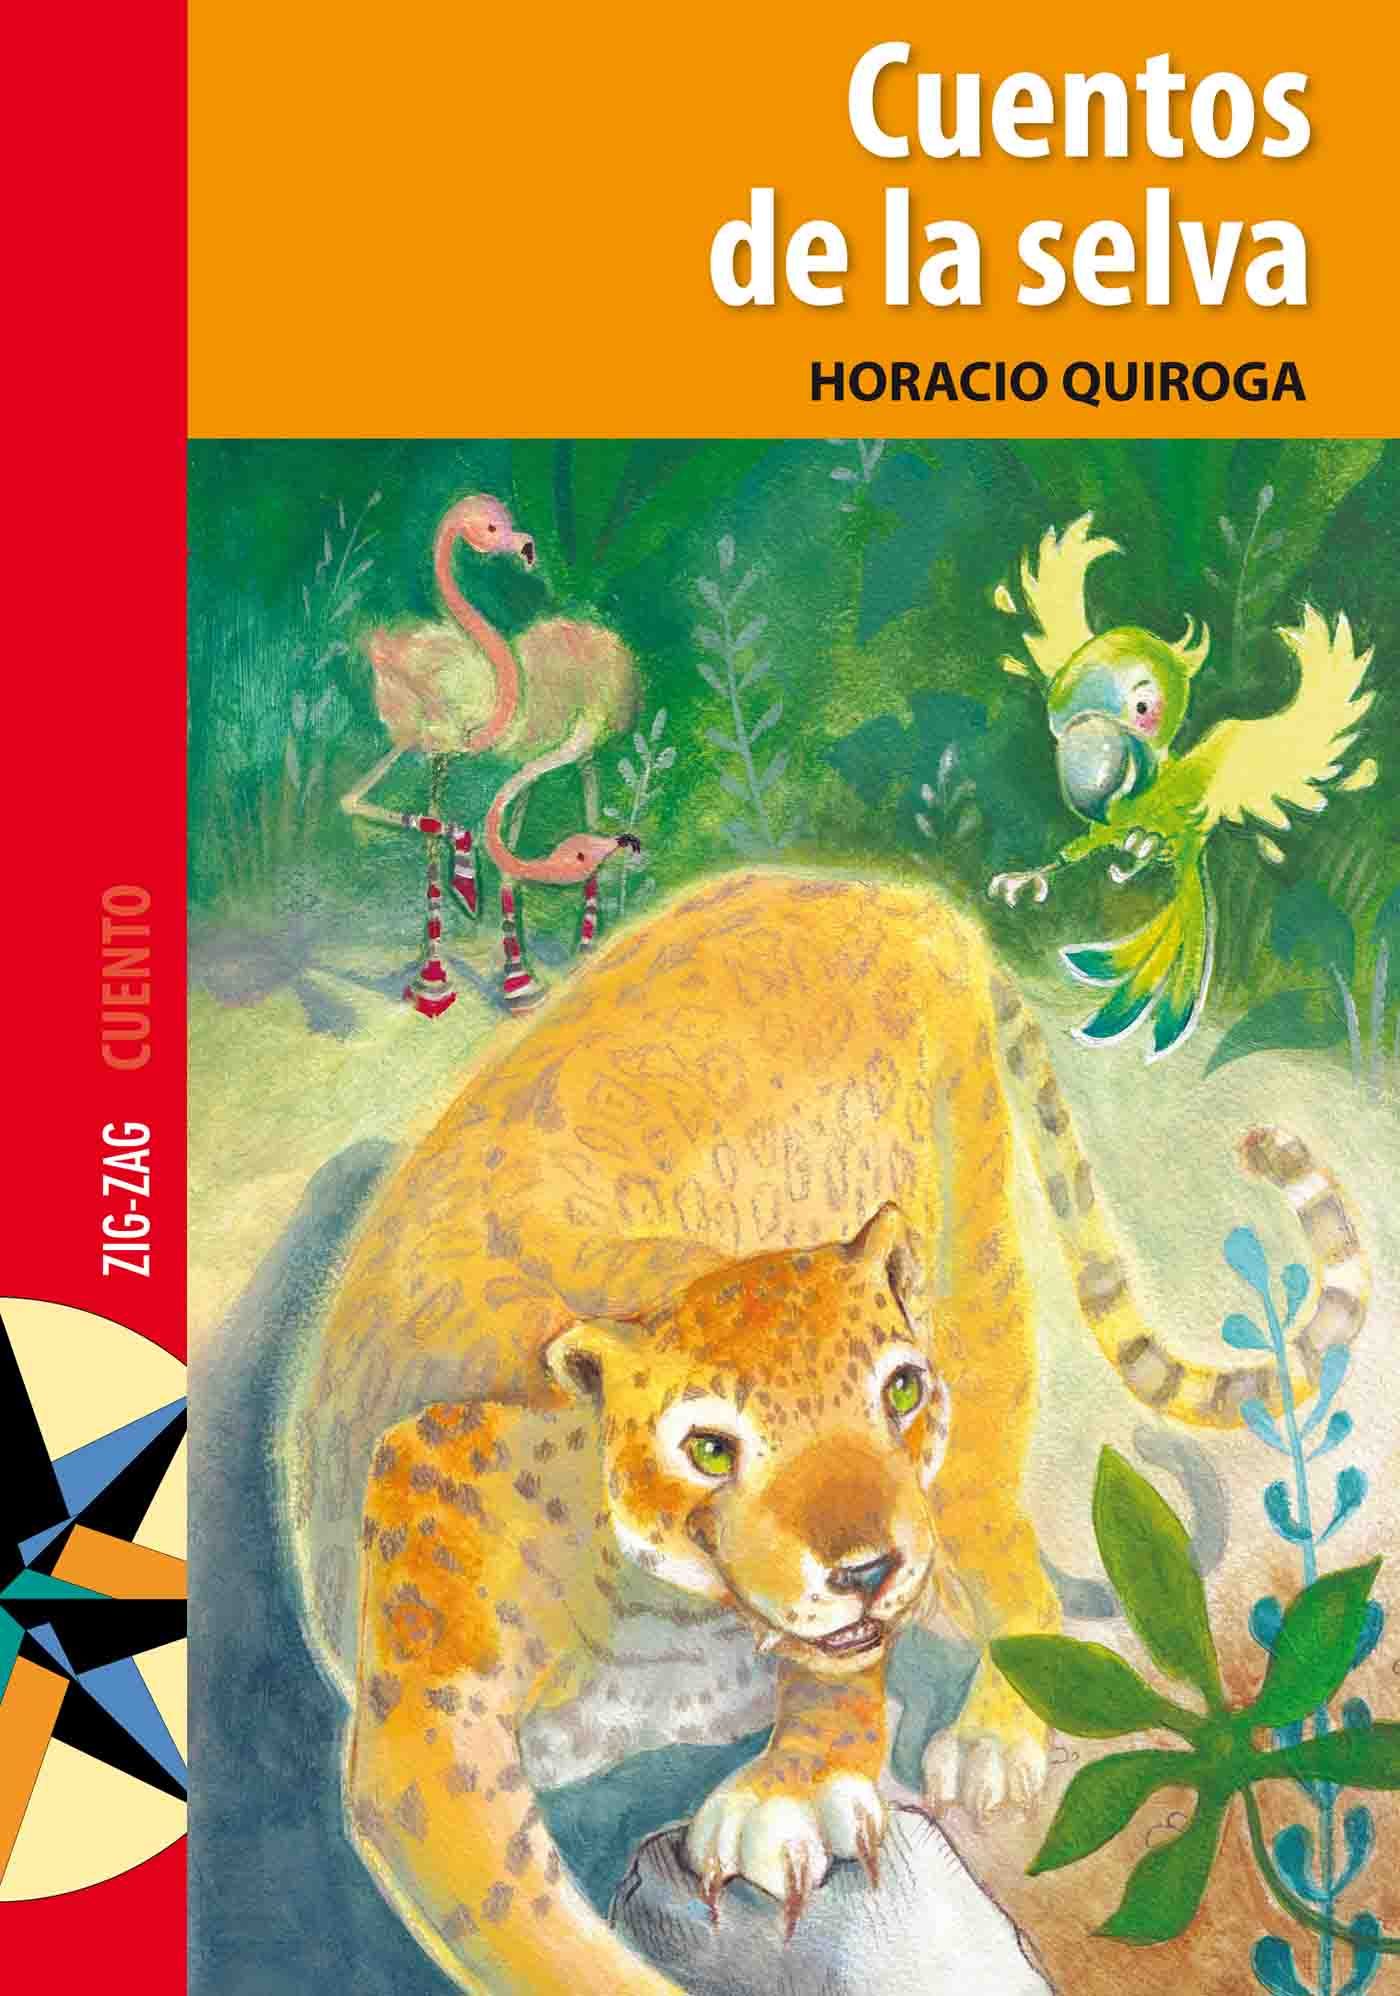 Cuentos De La Selva Ebook Horacio Quiroga Descargar Libro Pdf O Epub 9789561221949 7557